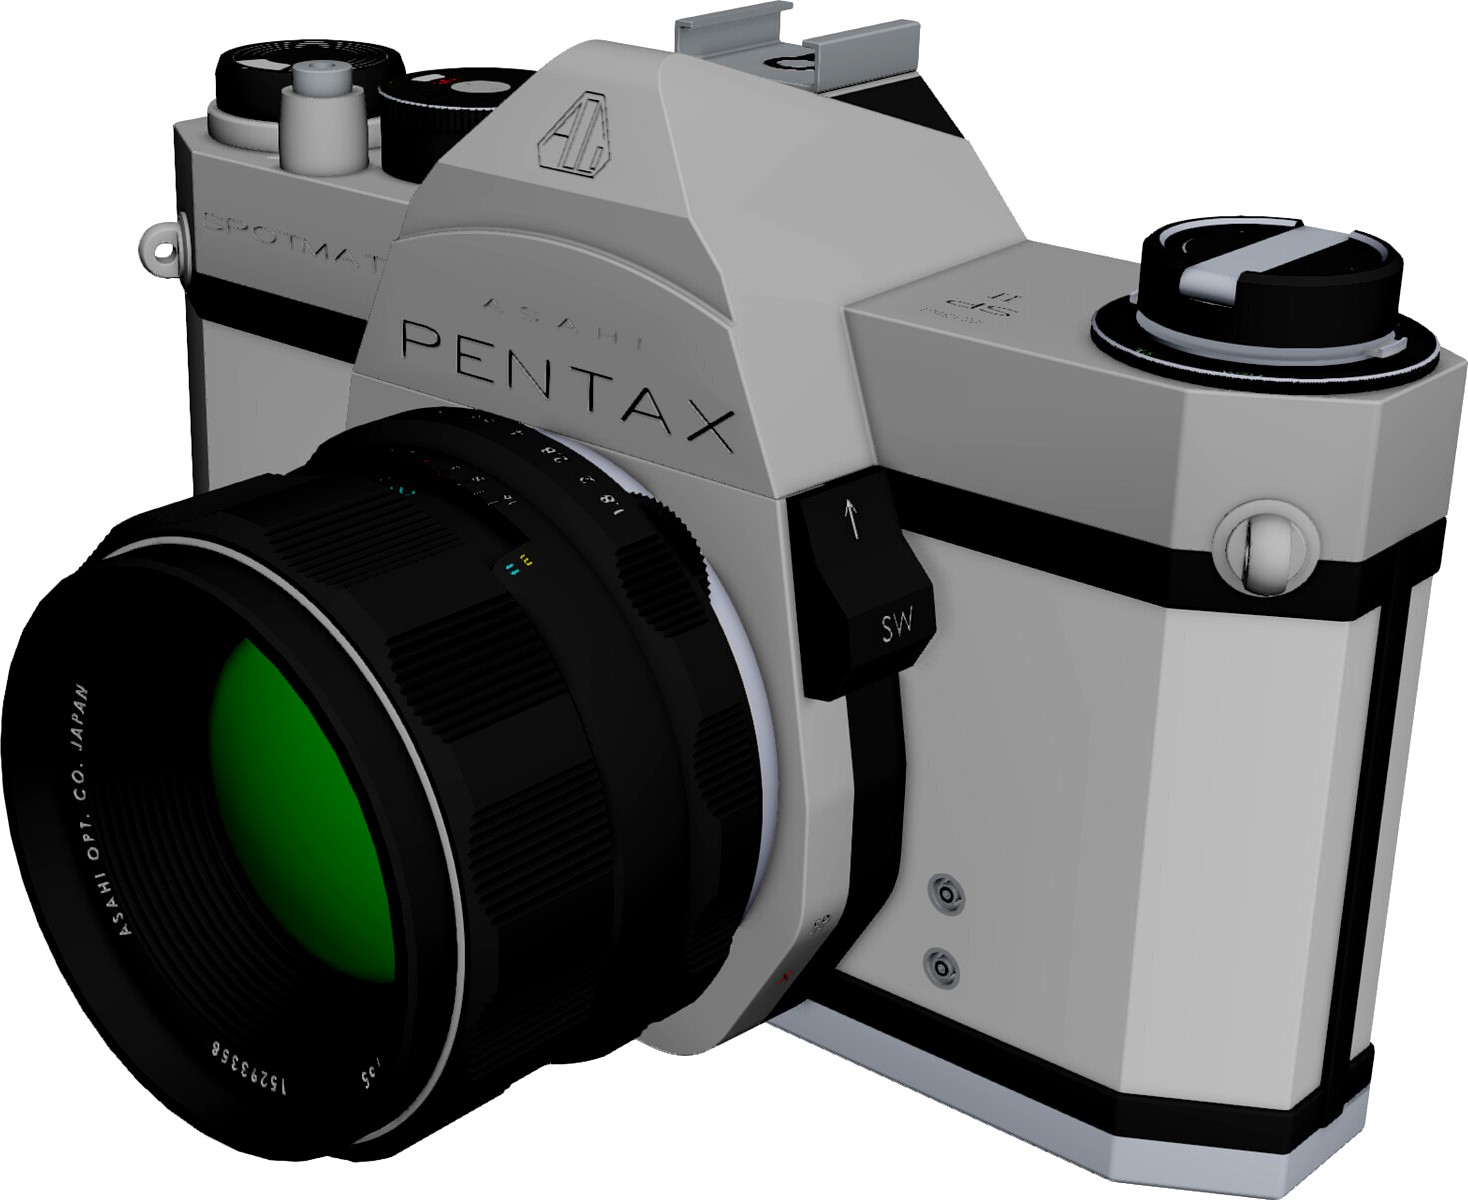 Pentax Spotmatic Camera 3D CAD Model